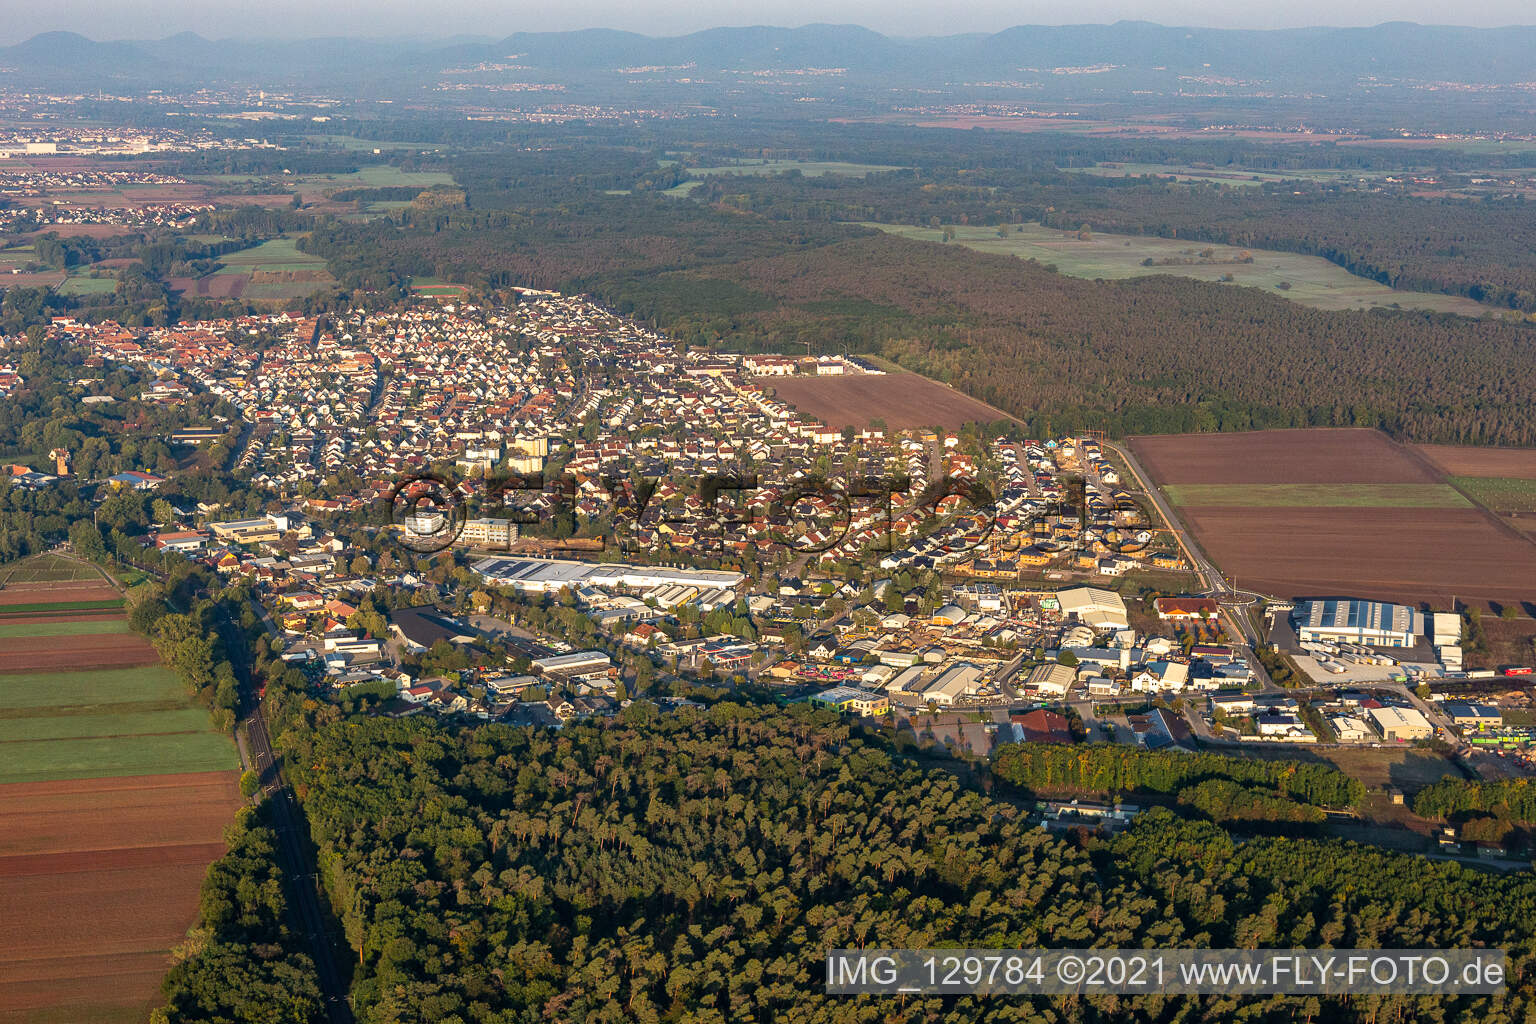 Vue aérienne de Zone commerciale Waldstückring à Bellheim dans le département Rhénanie-Palatinat, Allemagne